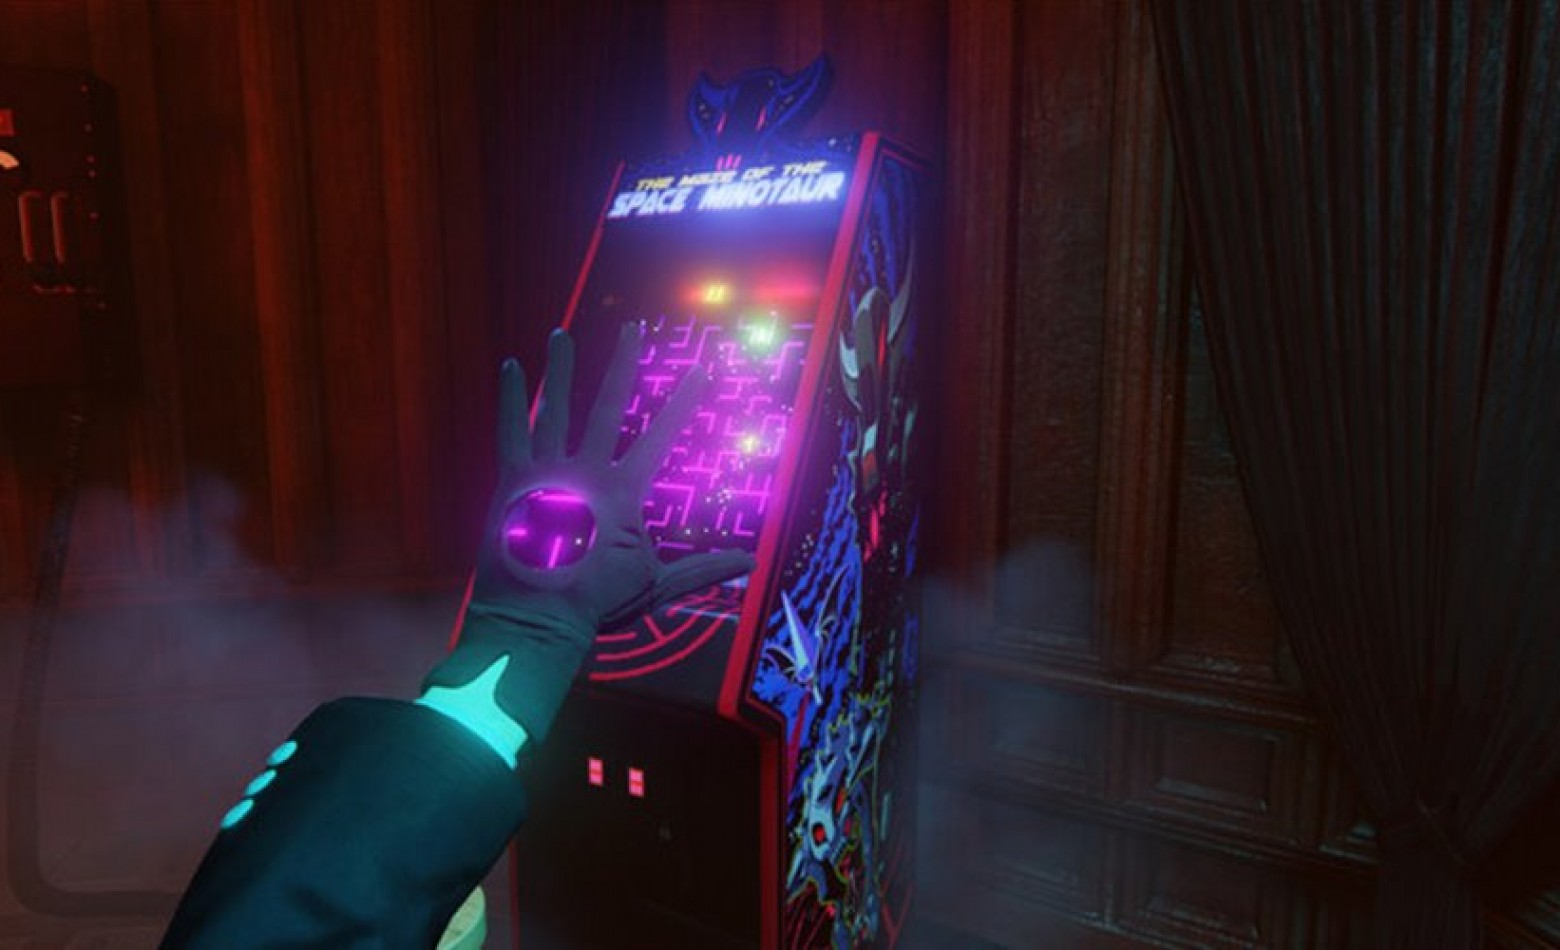 Desenvolvedores de BioShock apresentam The Black Glove, seu novo projeto